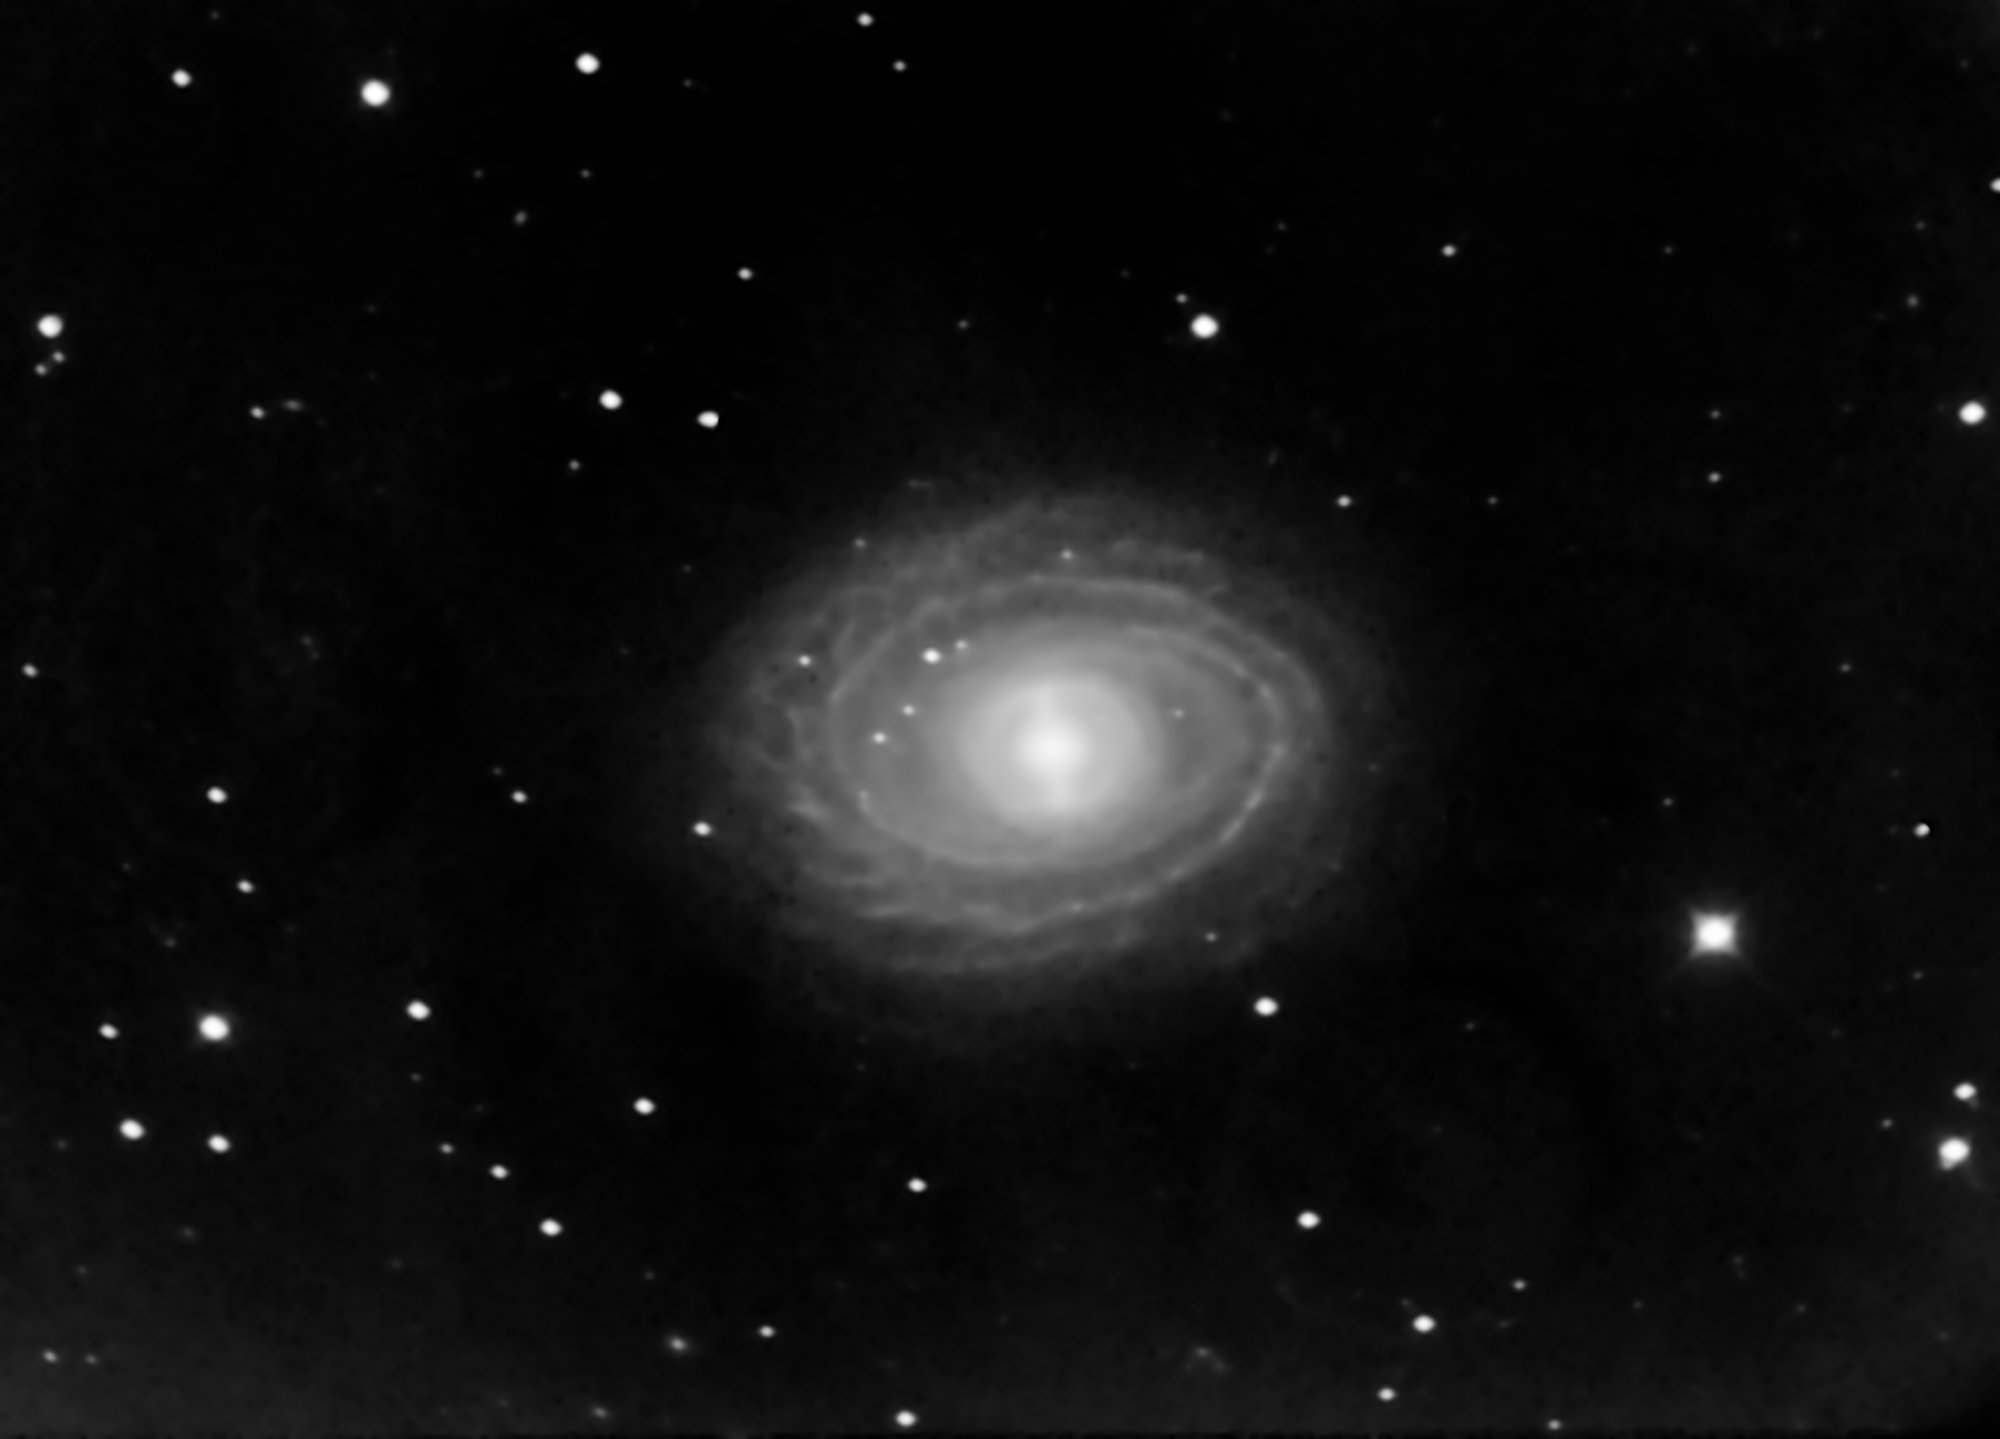 NGC1398